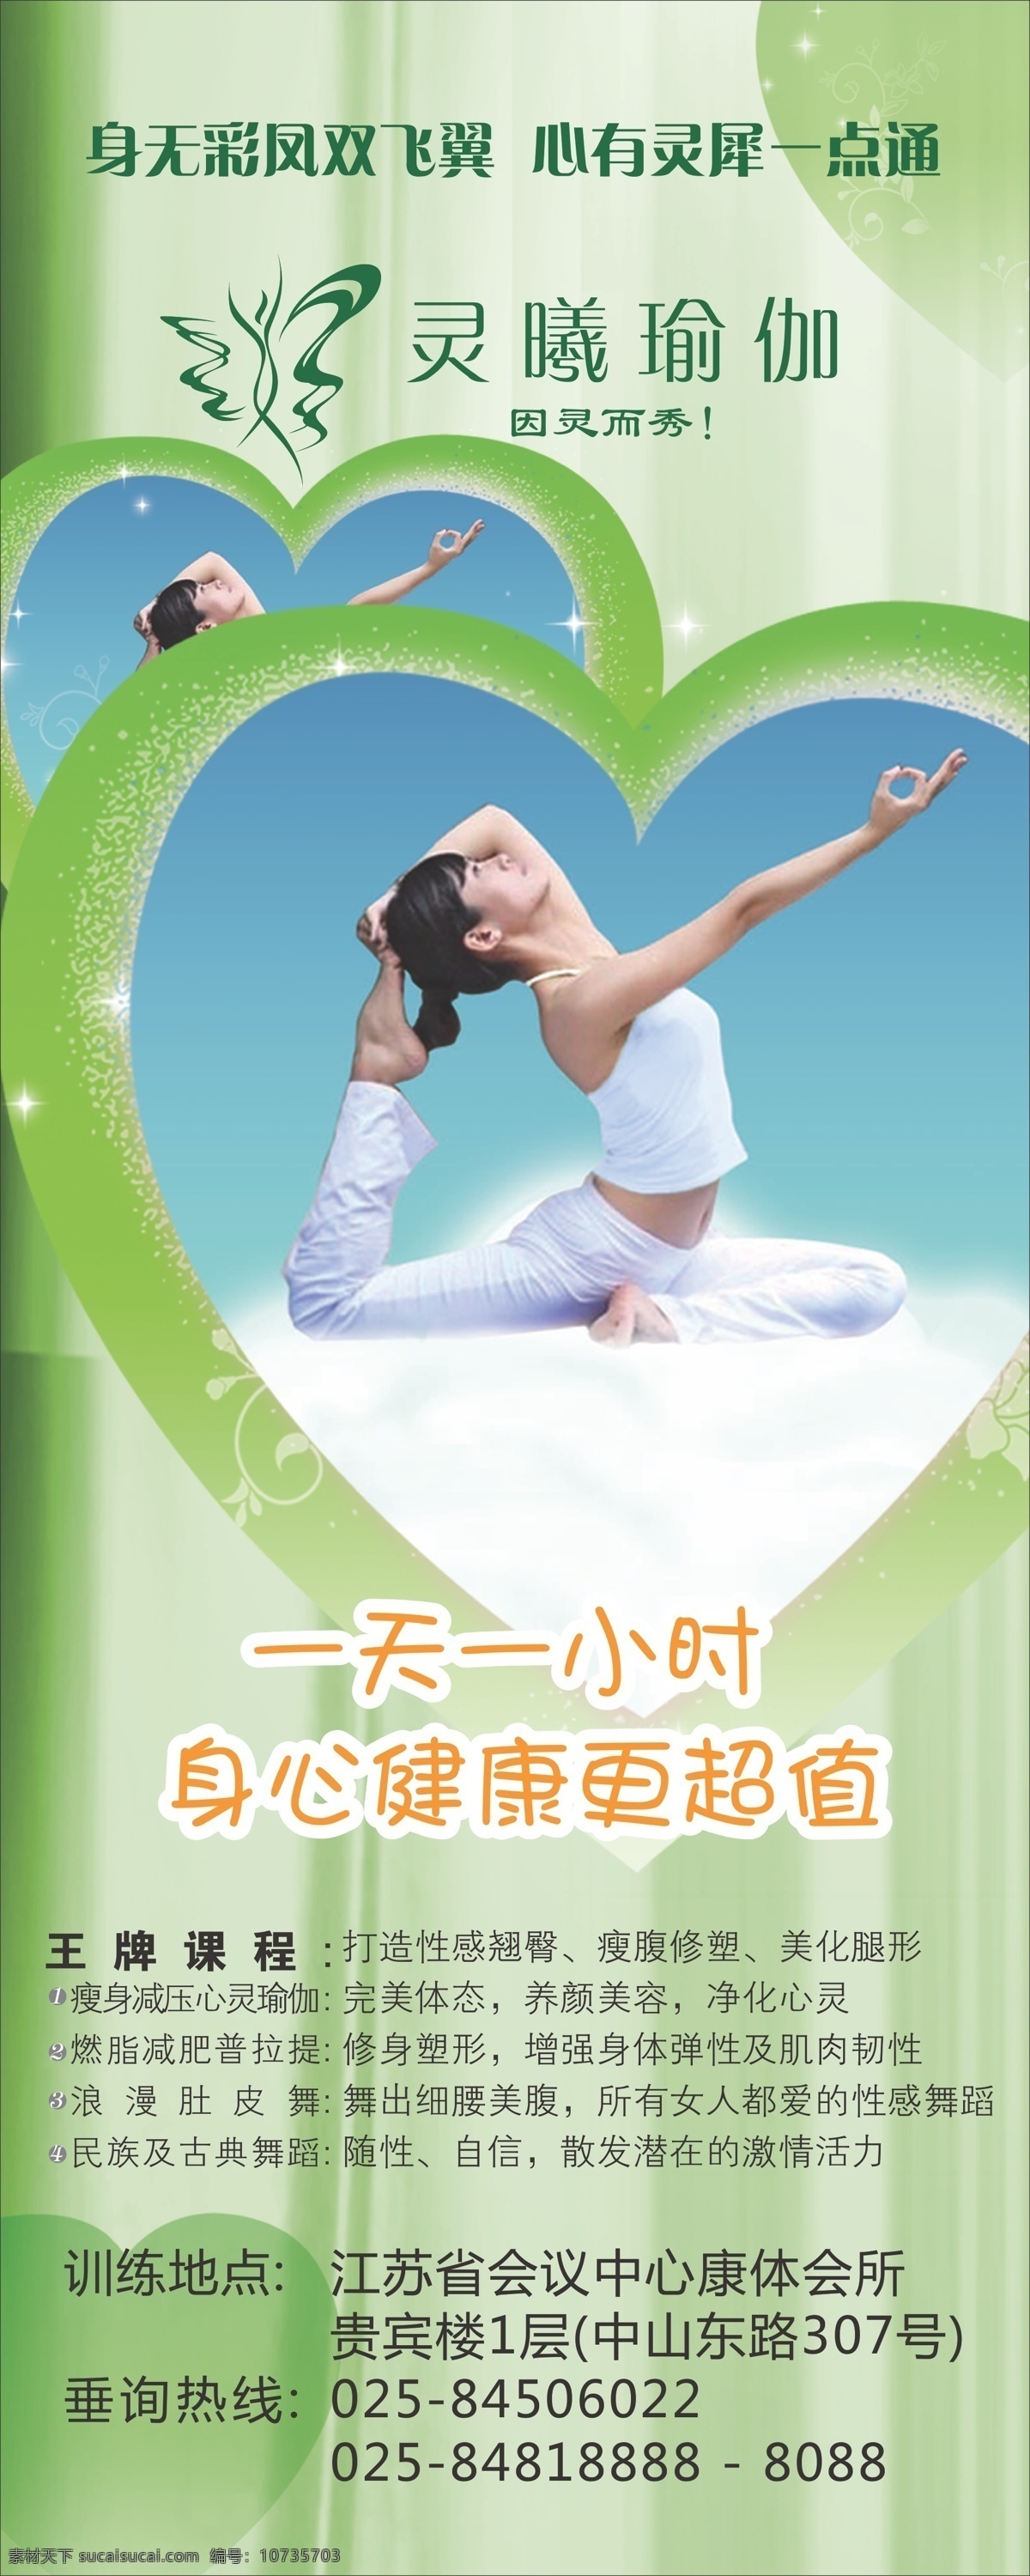 瑜伽 健身 易拉宝 锻炼 动作 绿色 灵曦瑜伽 飞舞 蓝天白云 心形 海报 展板 写真